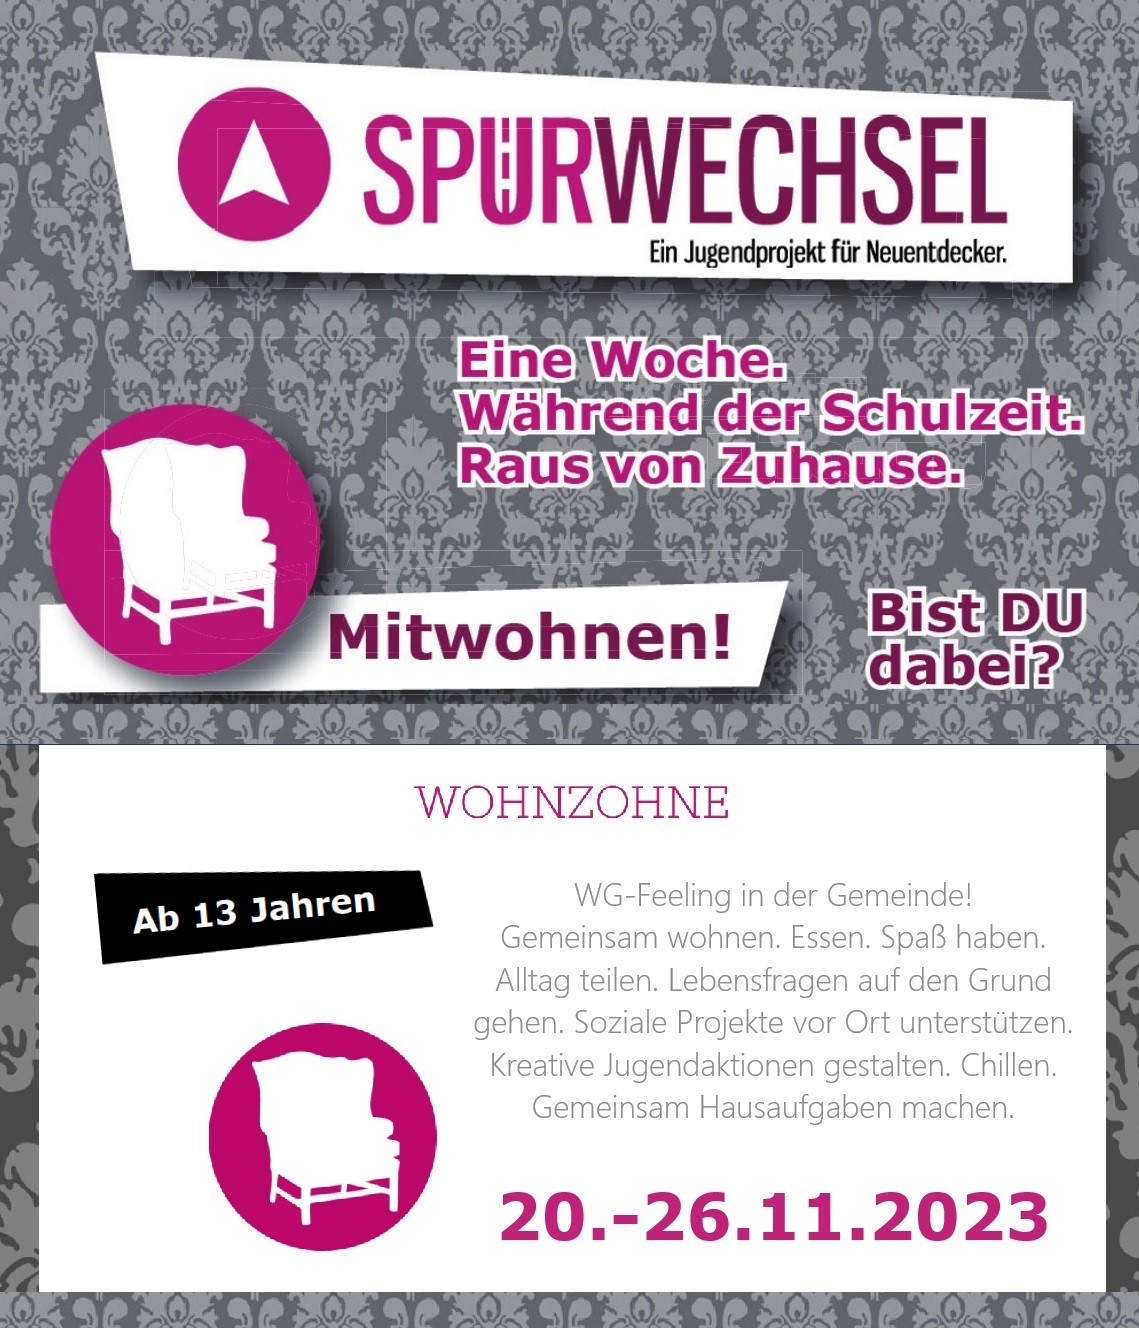 Spurwechsel_Wohnwoche_2023_web.jpg